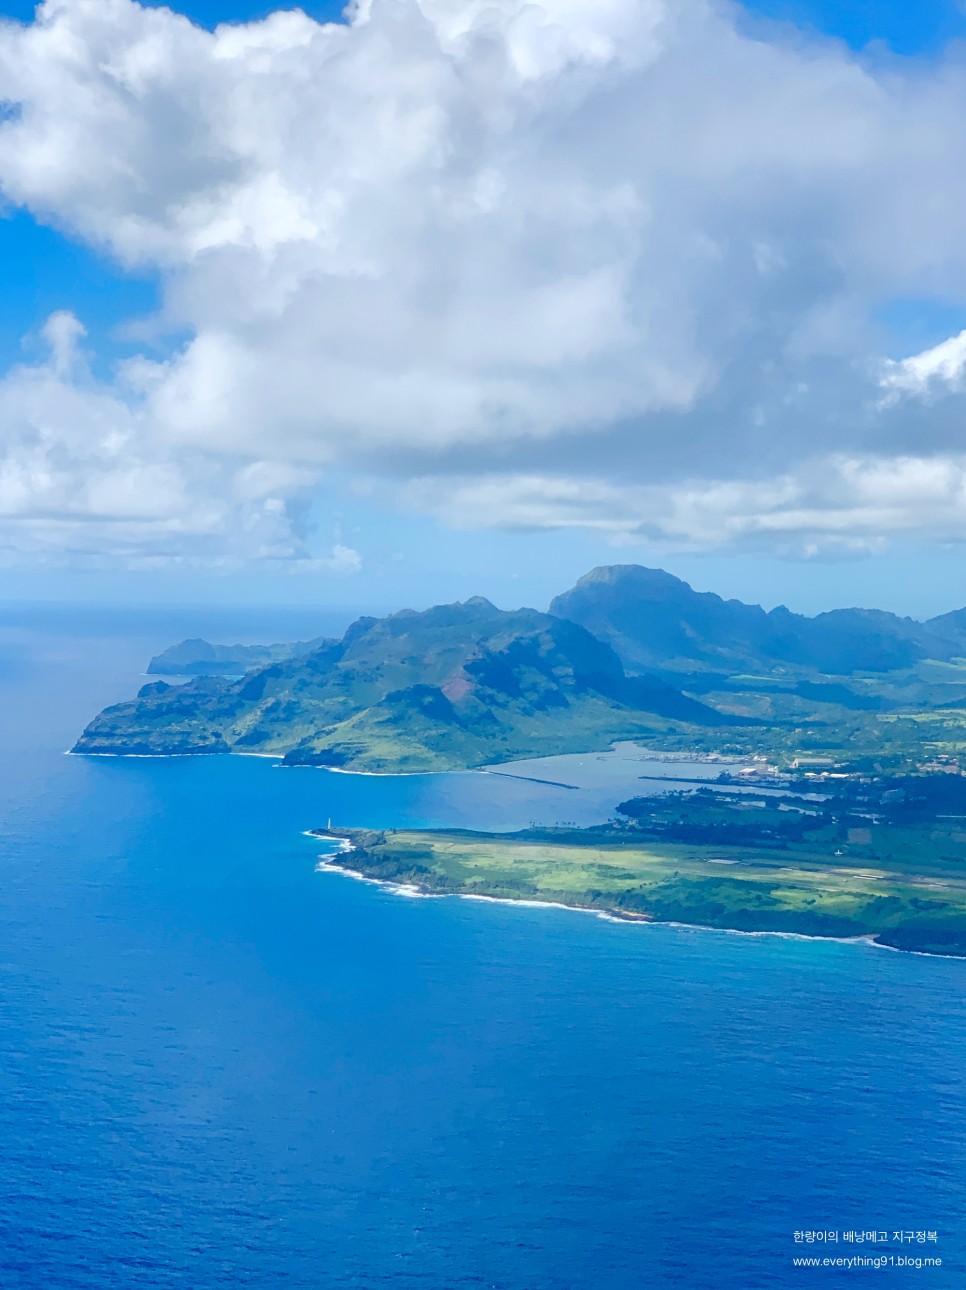 하와이 여행준비물과 쇼핑 리스트